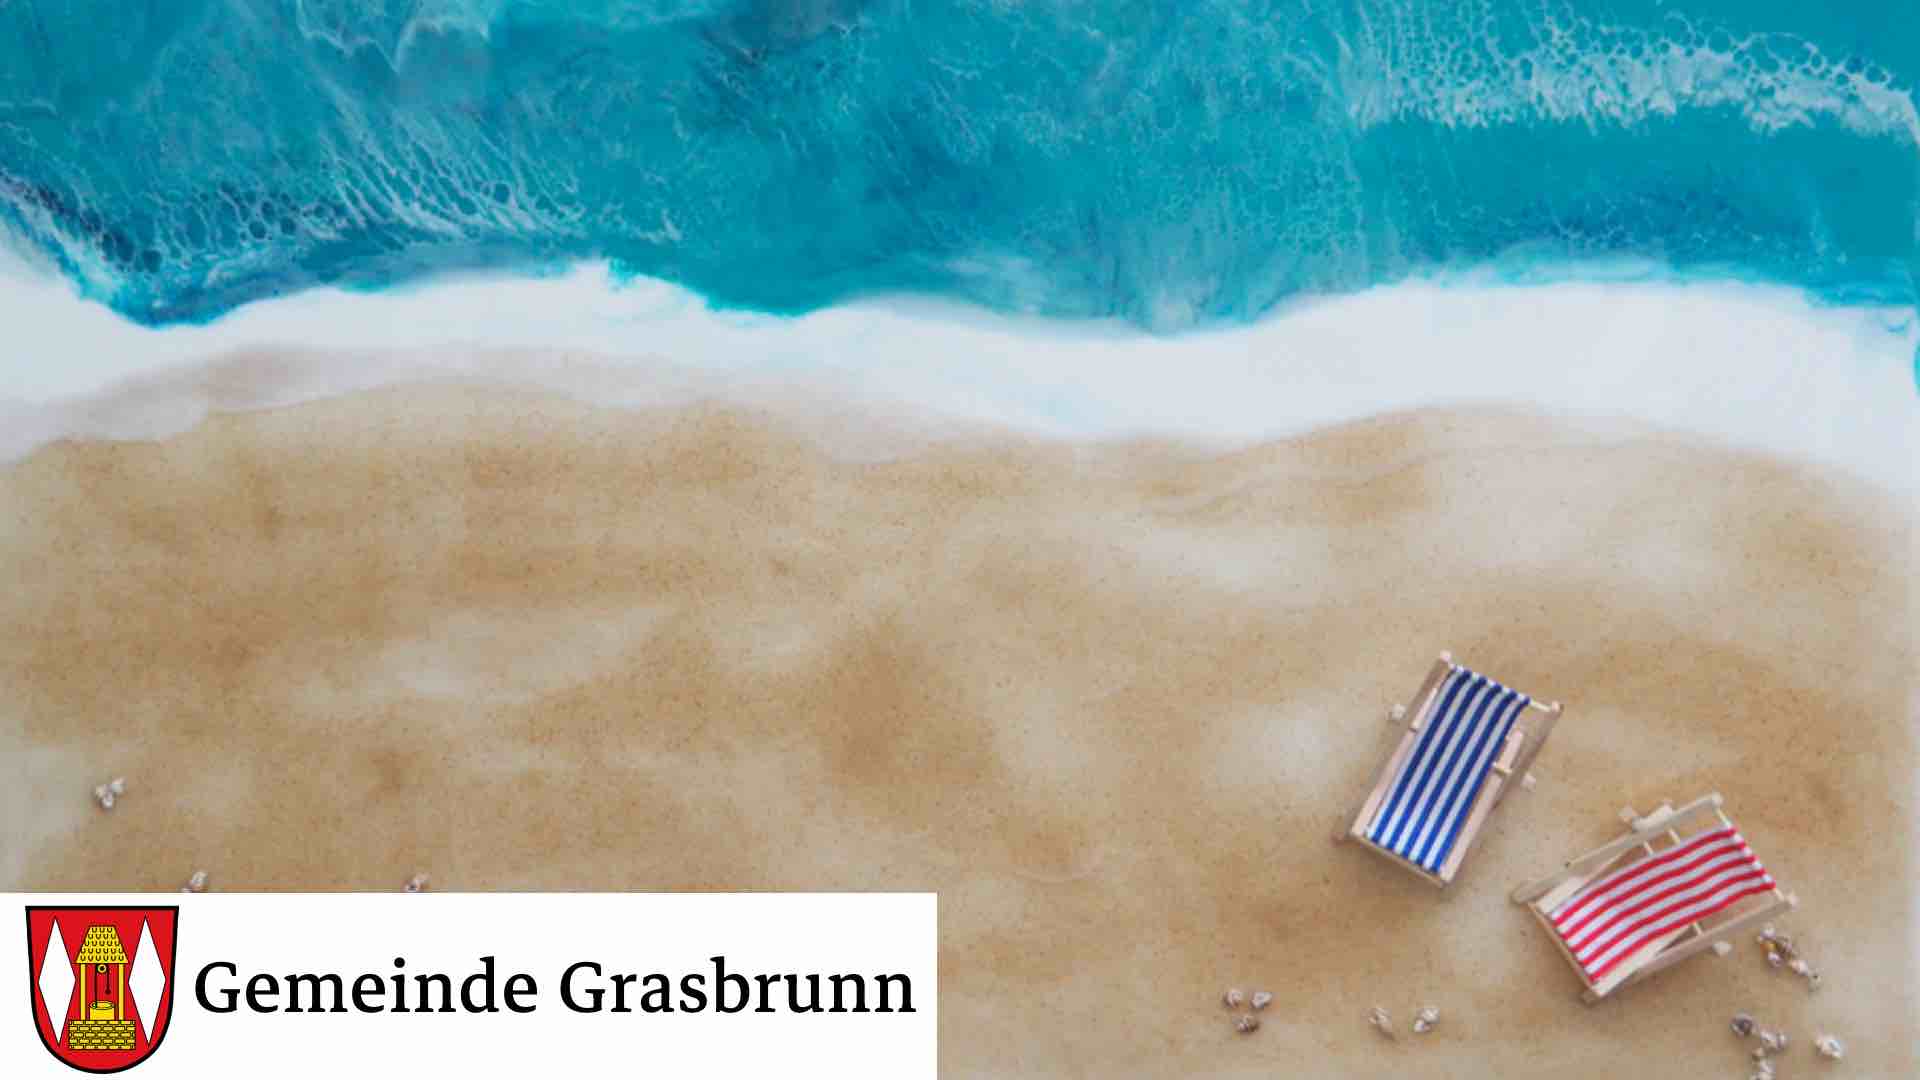 Gemeinde Grasbrunn Susanne Kraft